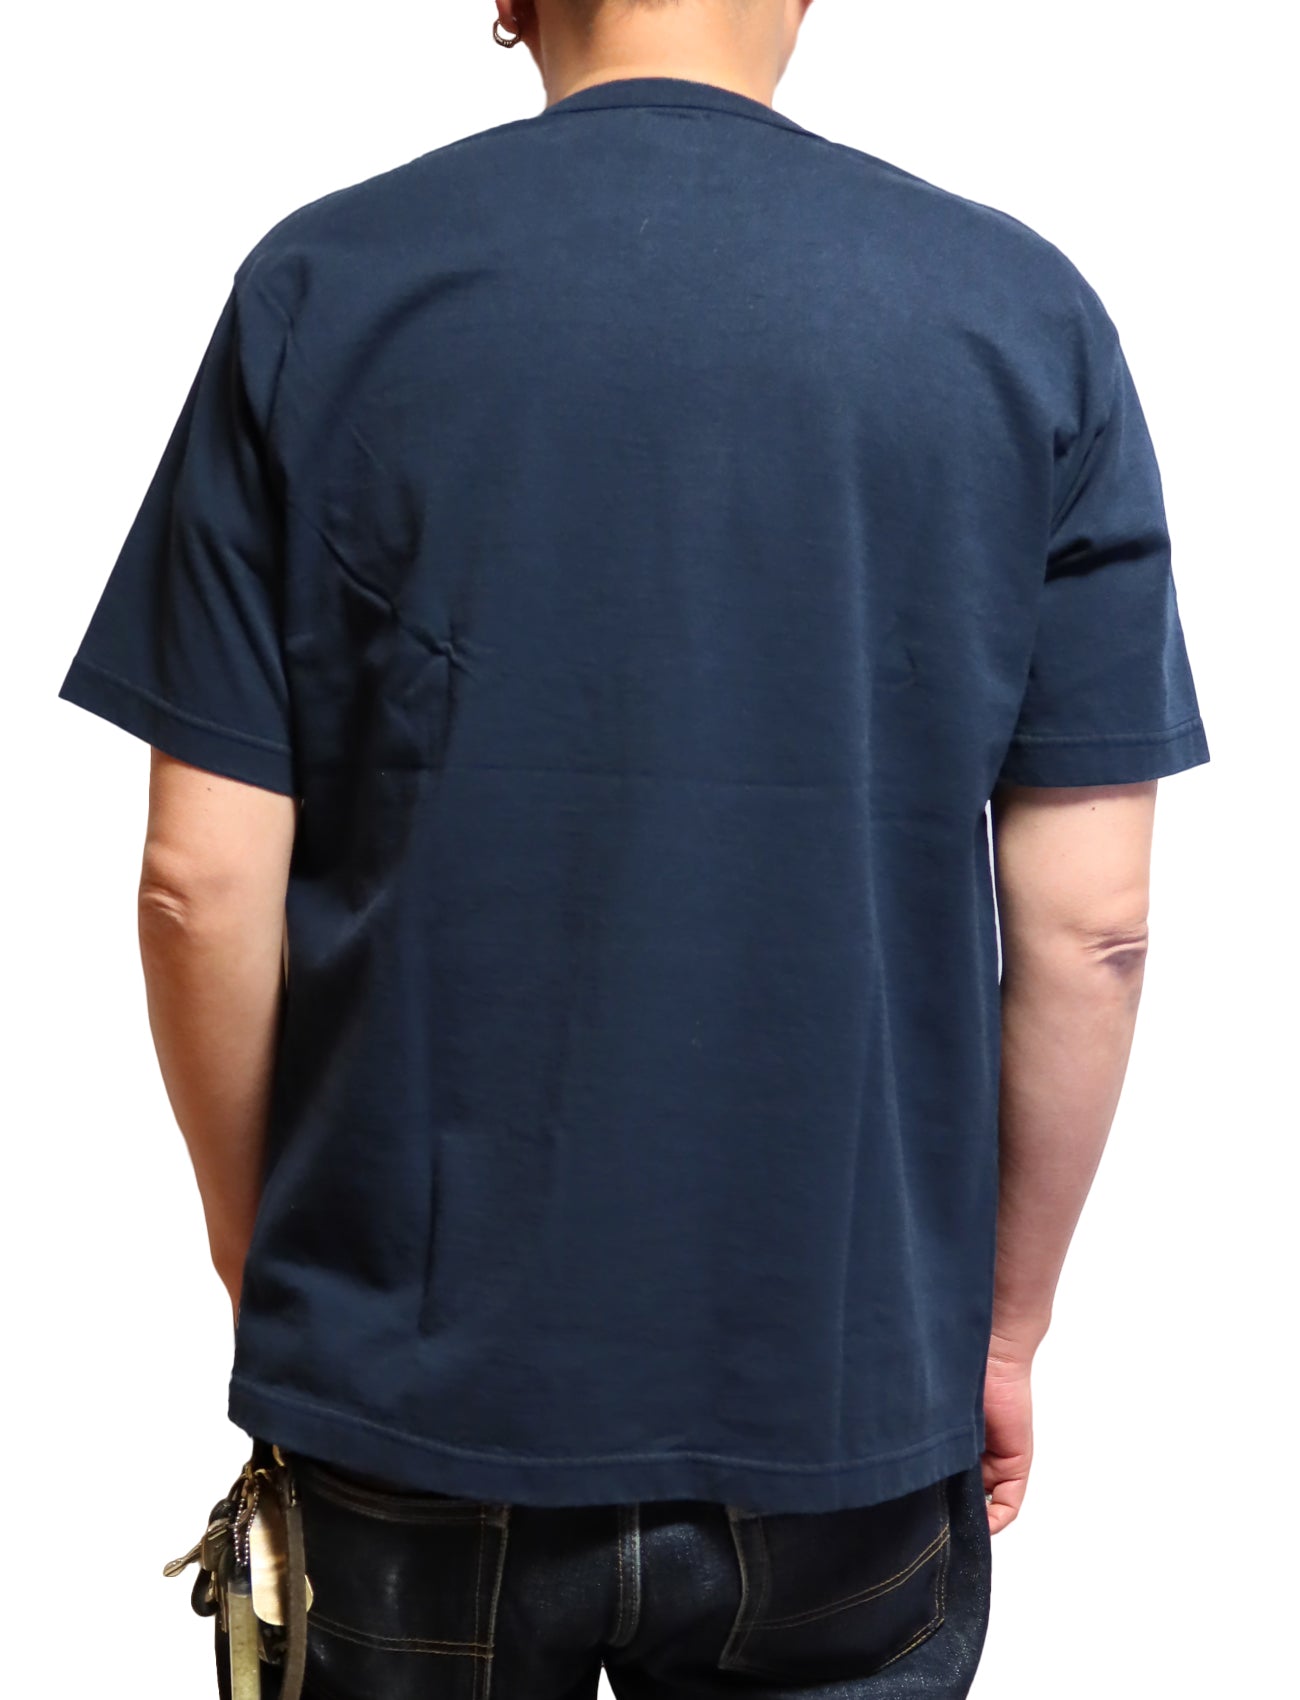 GUNZ ガンズ Tシャツ 半袖 GRIFFITH メンズ カレッジ 444G088 日本製